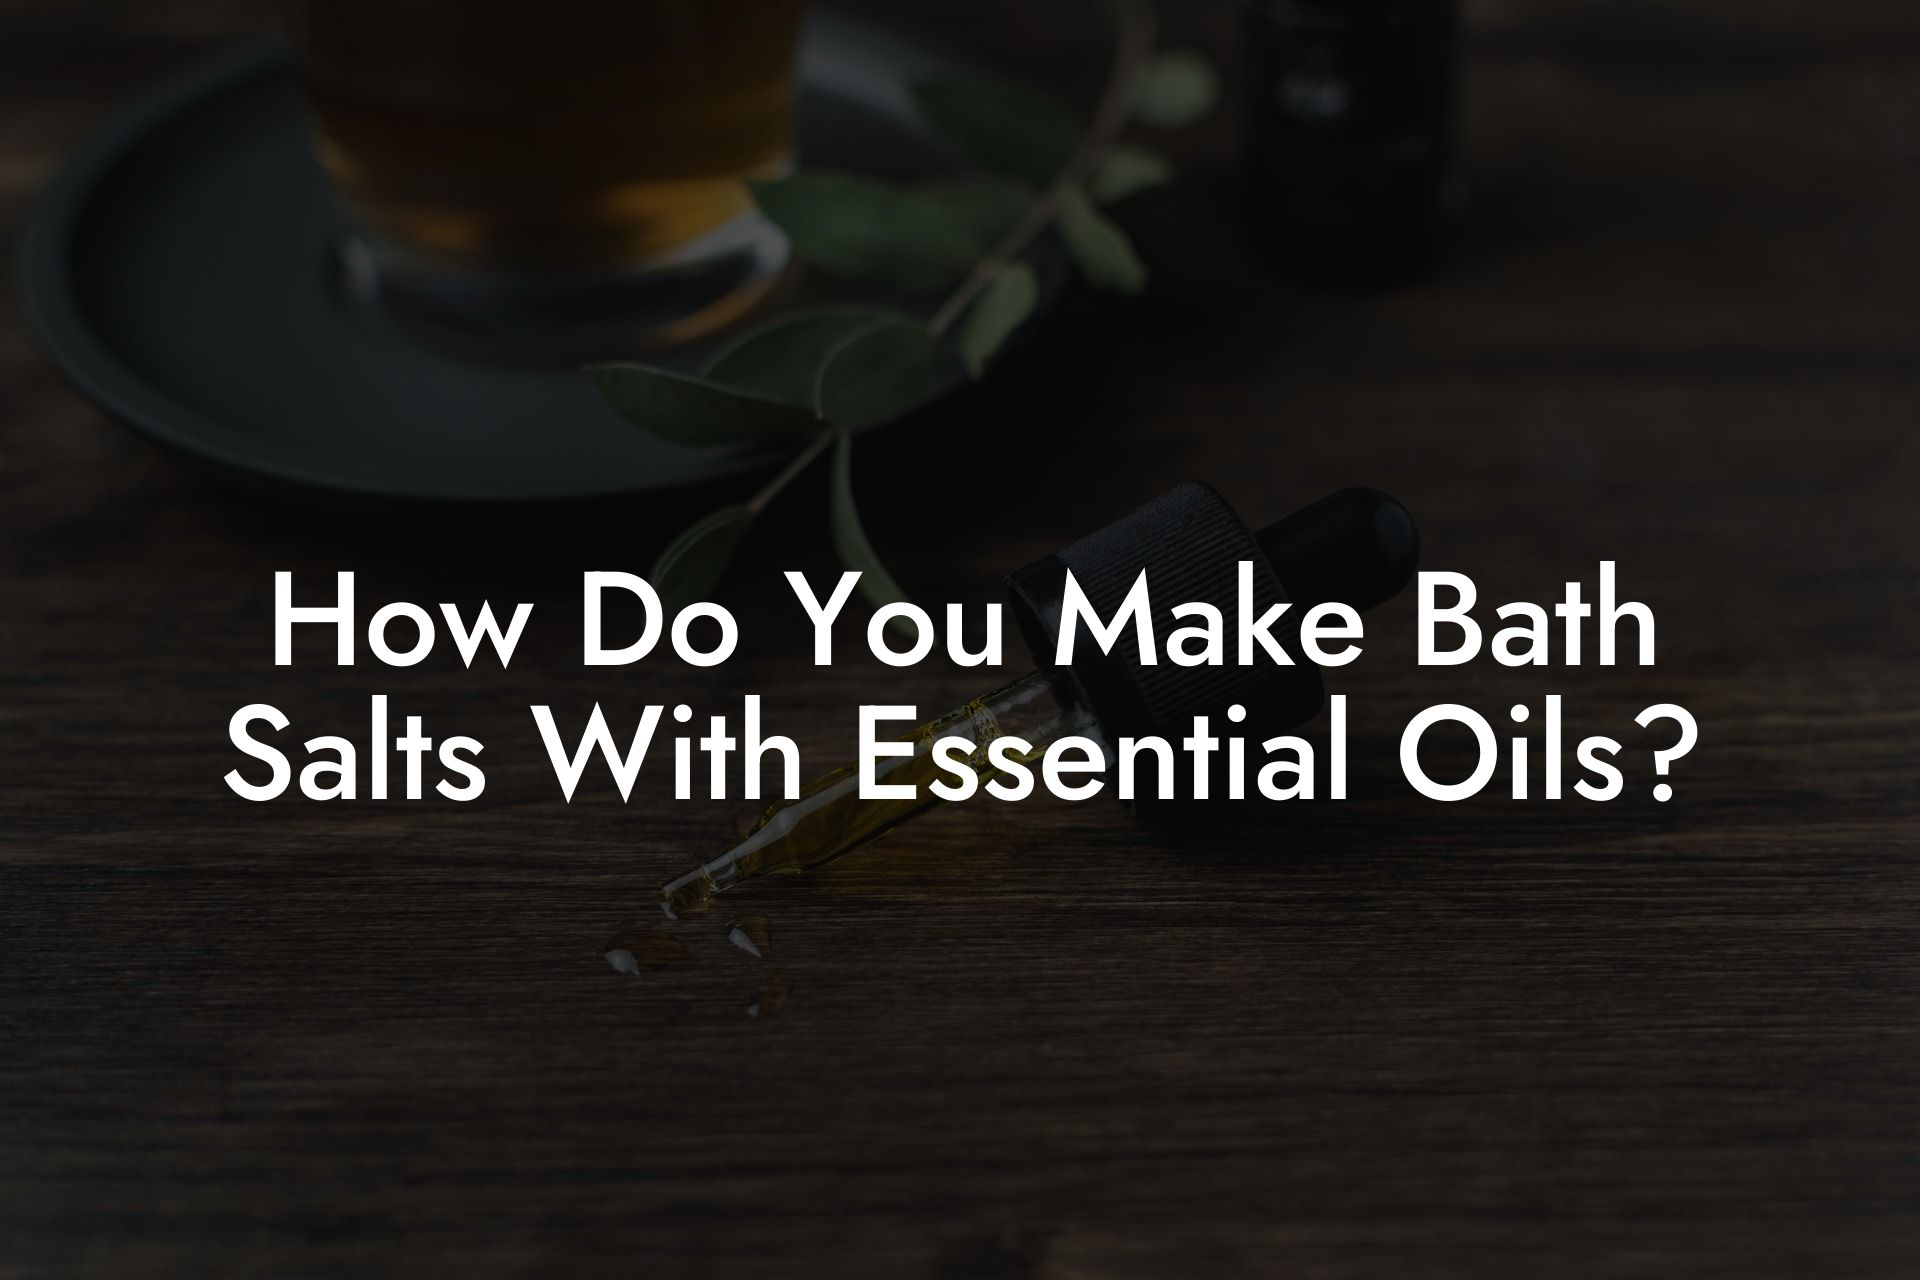 How Do You Make Bath Salts With Essential Oils?